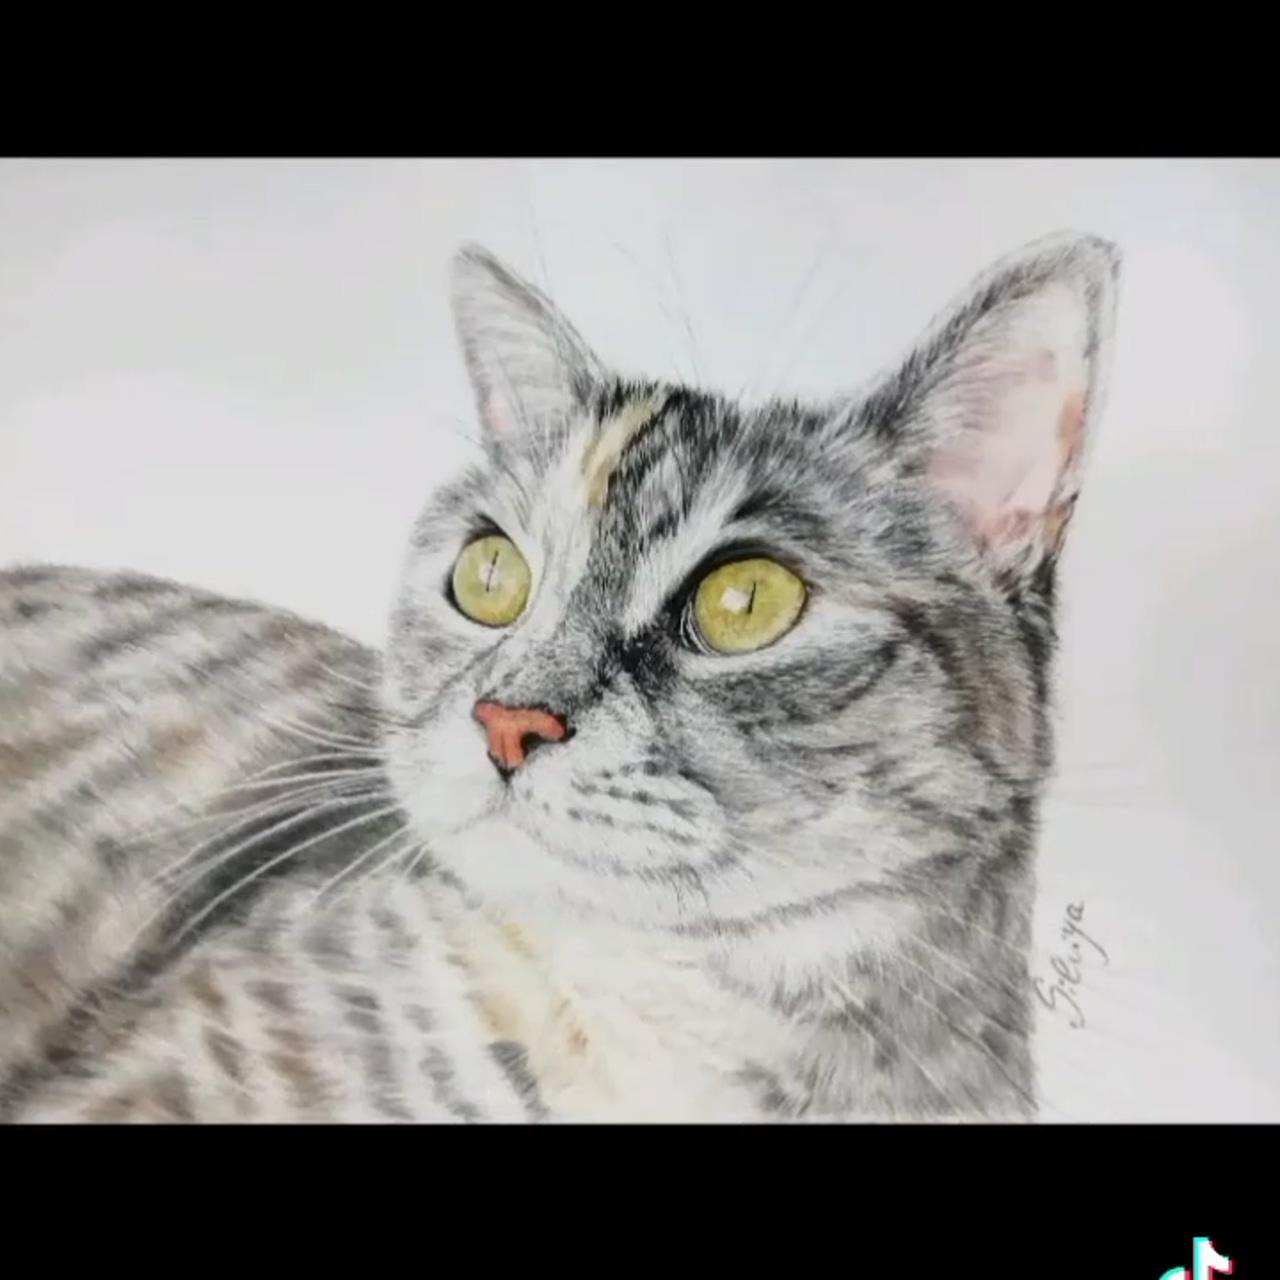 Colored pencils cat portrait | dogue de bordeaux portrait in progress